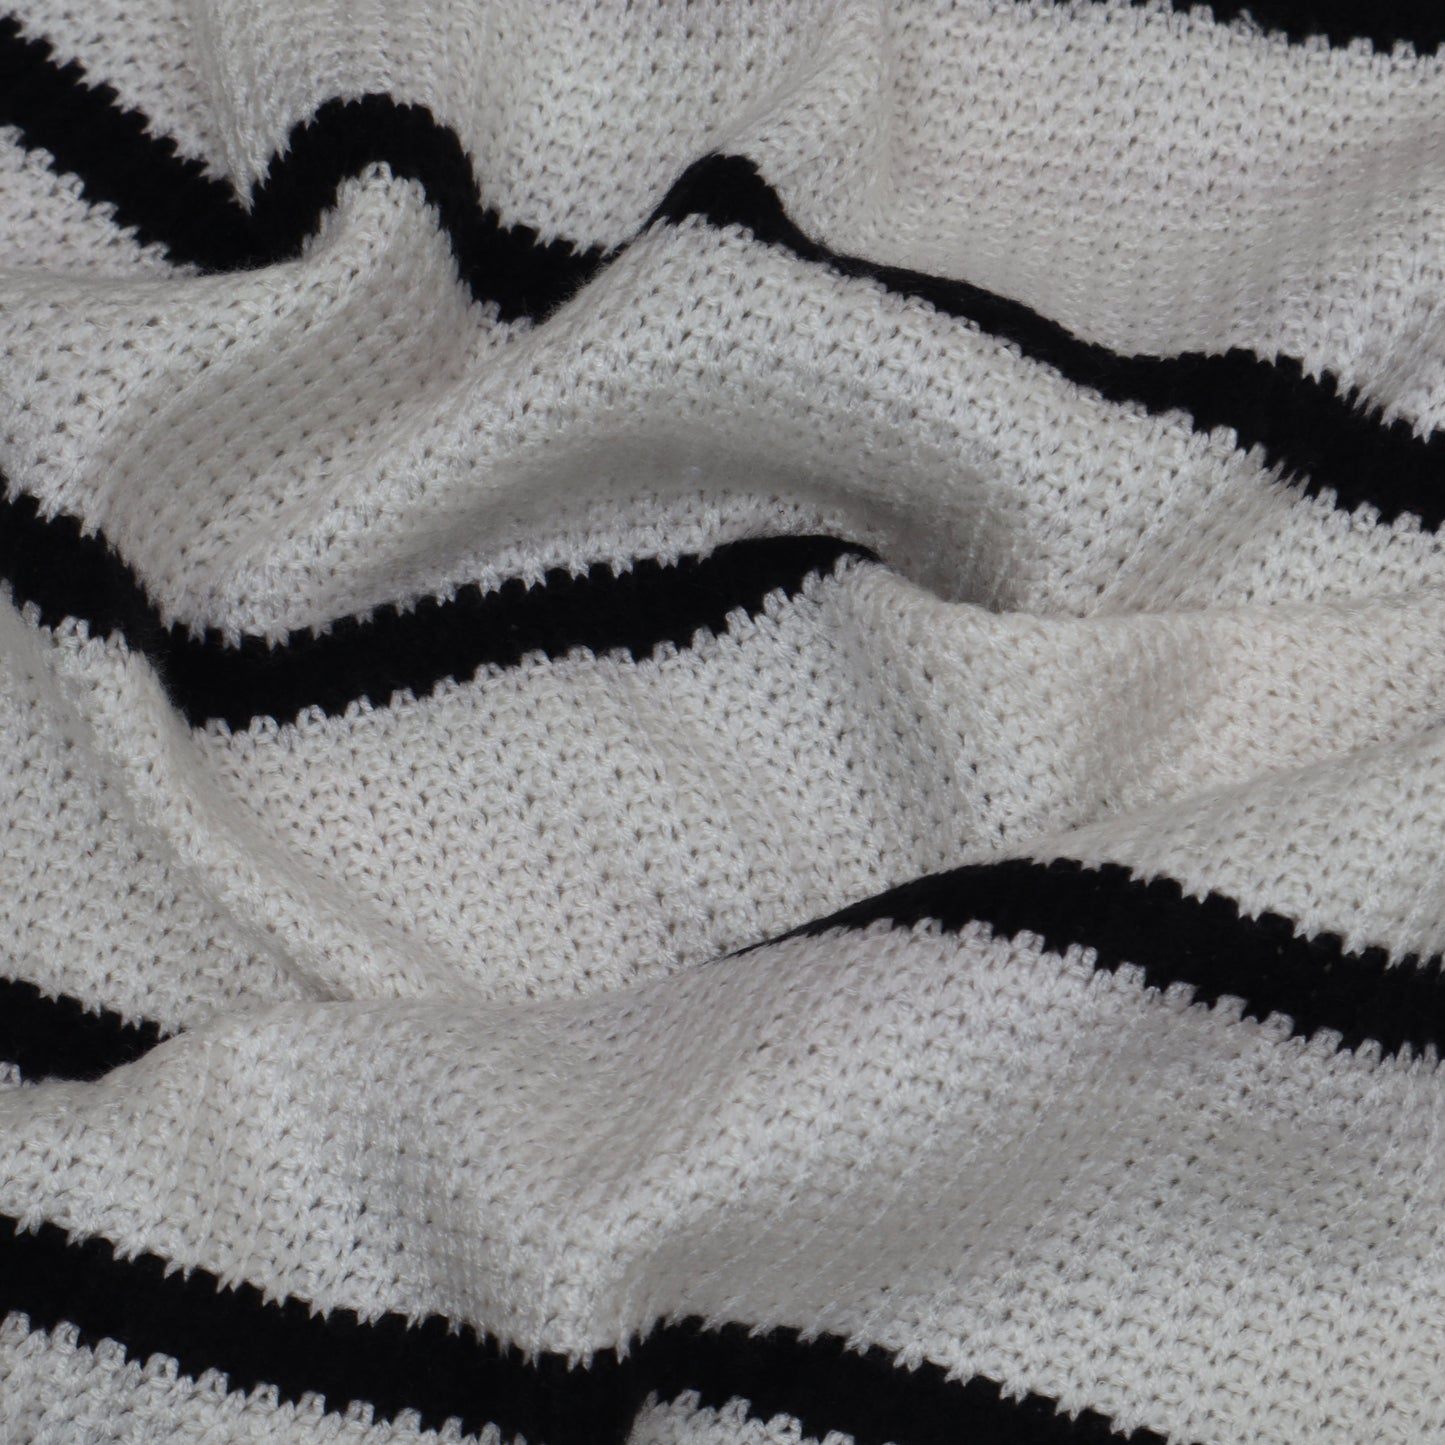 Woolen Stripe Fabric